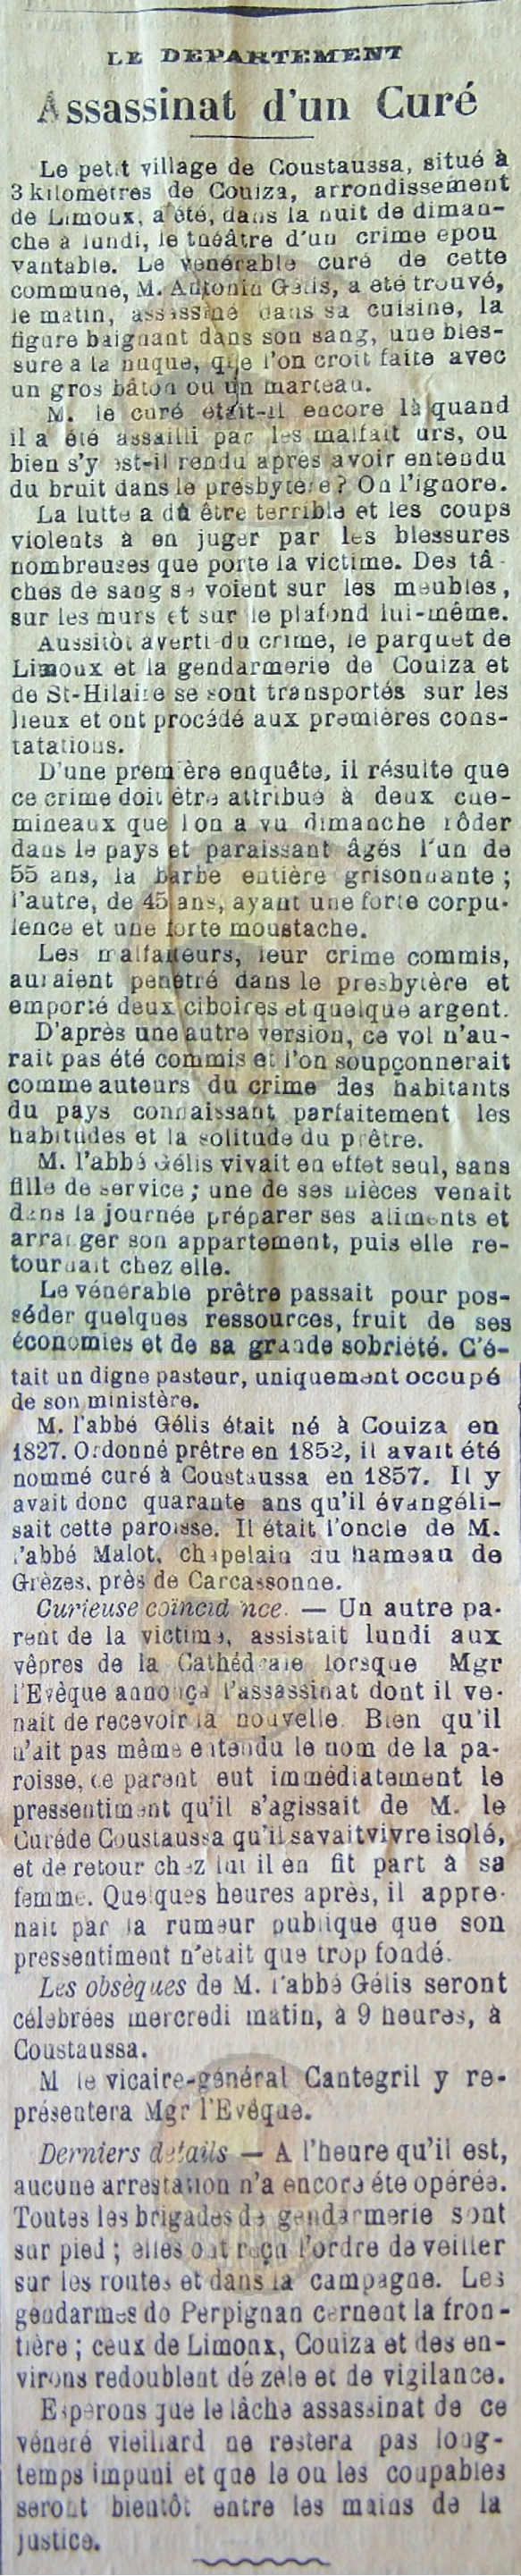 03-11-1897, Le Courrier de l’Aude